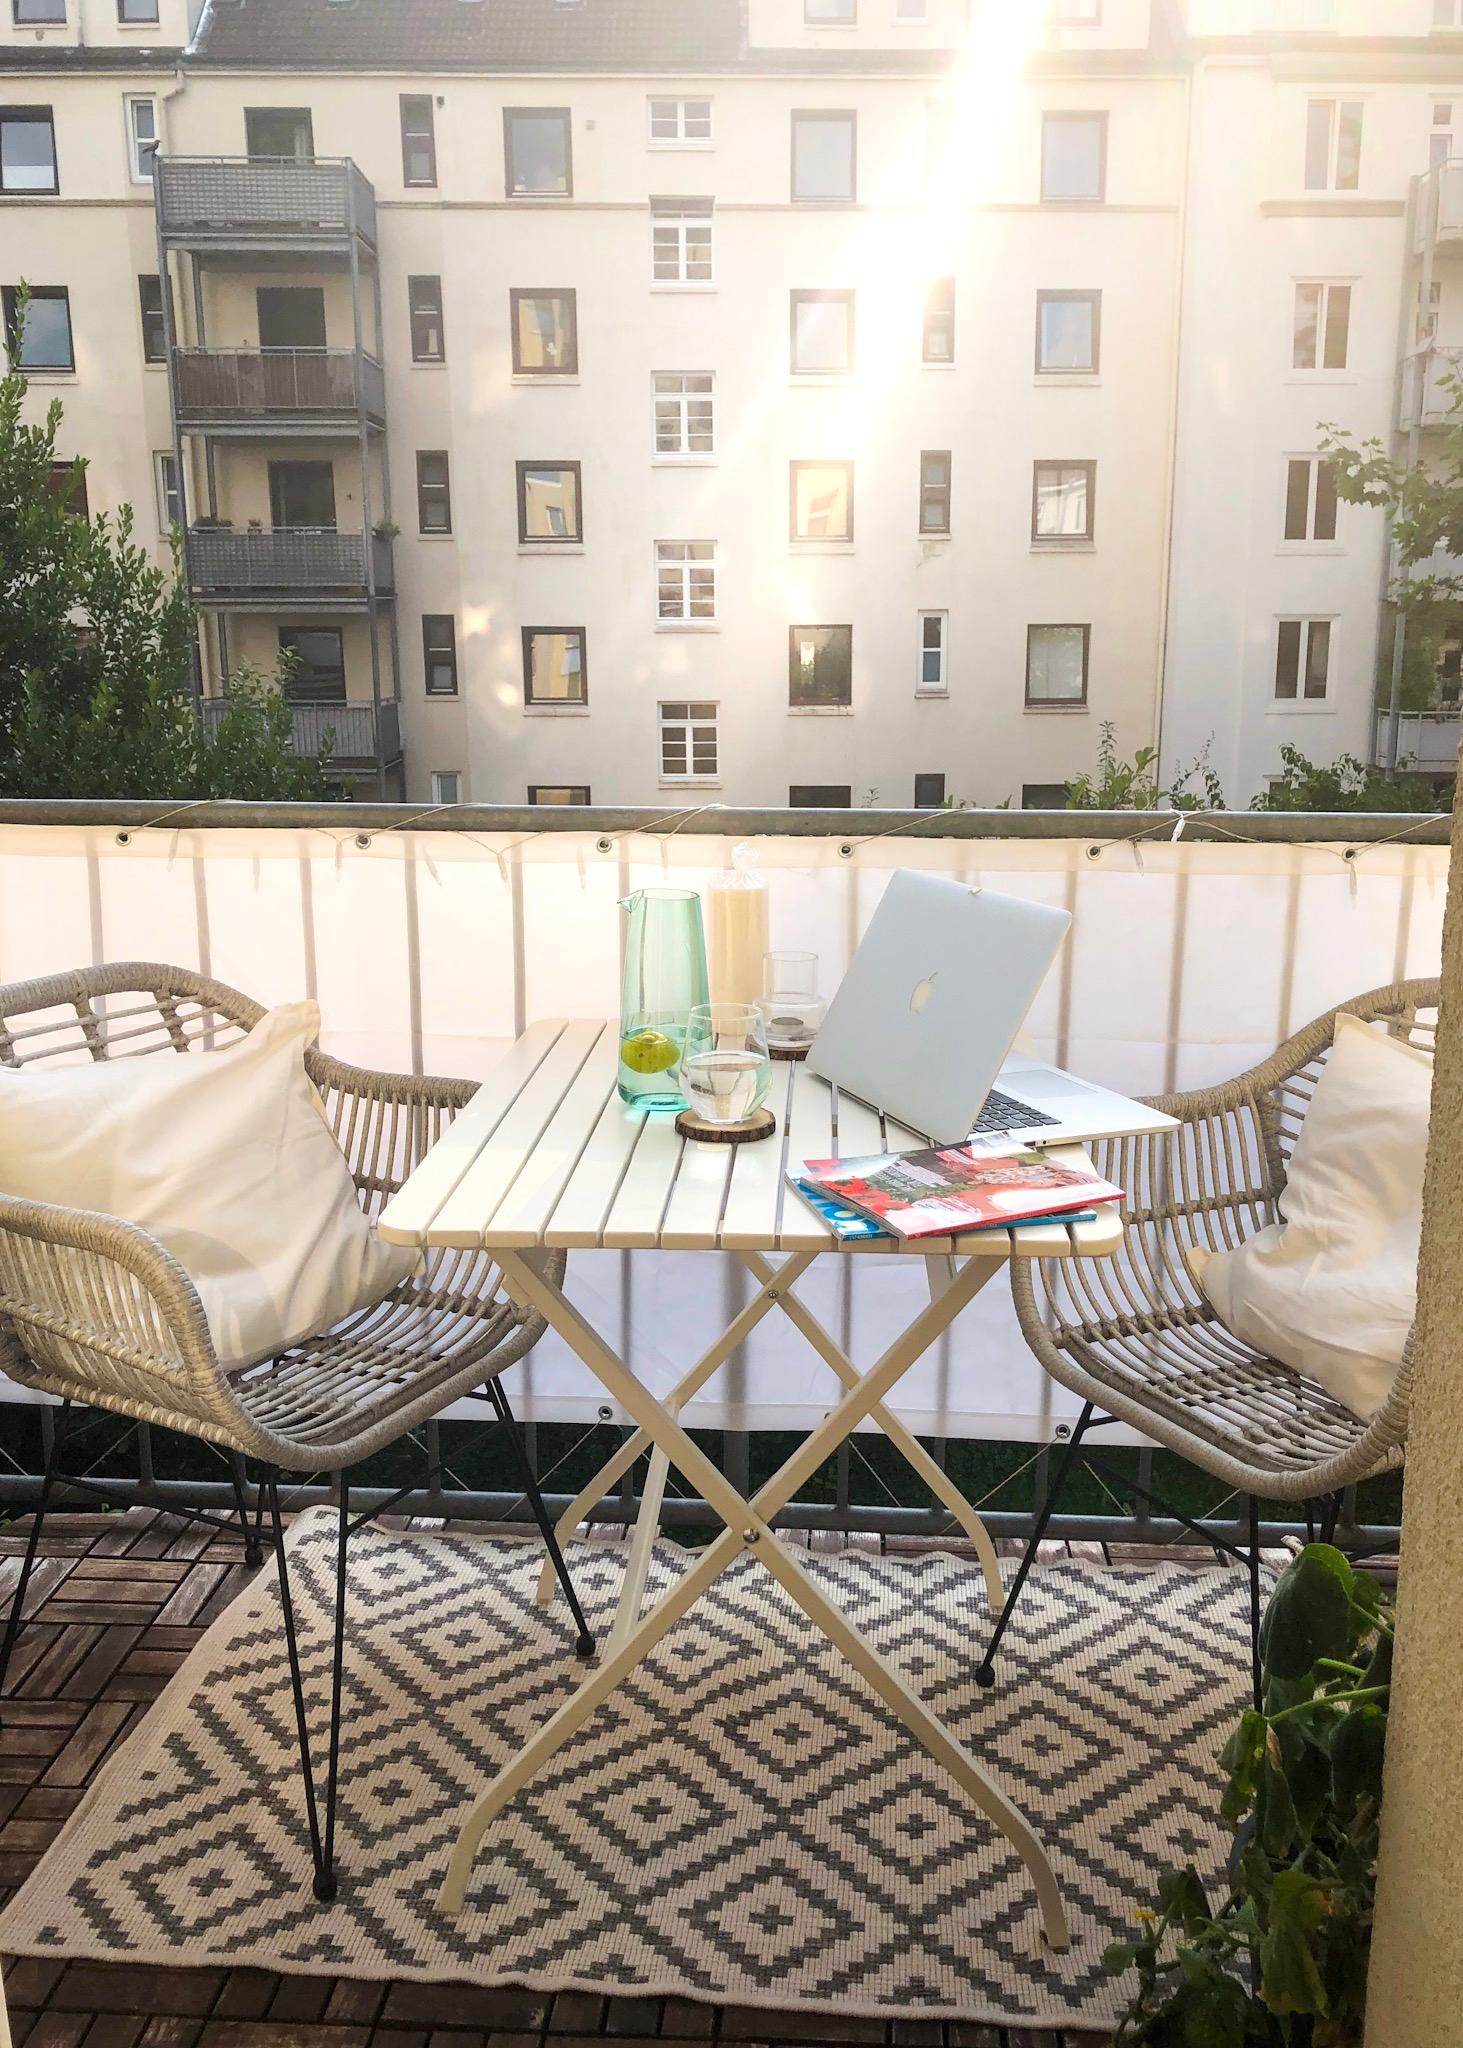 Couchgeflüster auf dem Balkon. Mein neuer Lieblingsplatz im Sommer für Homeoffice und Couch lesen♥️🌞 

#balkon #sommer